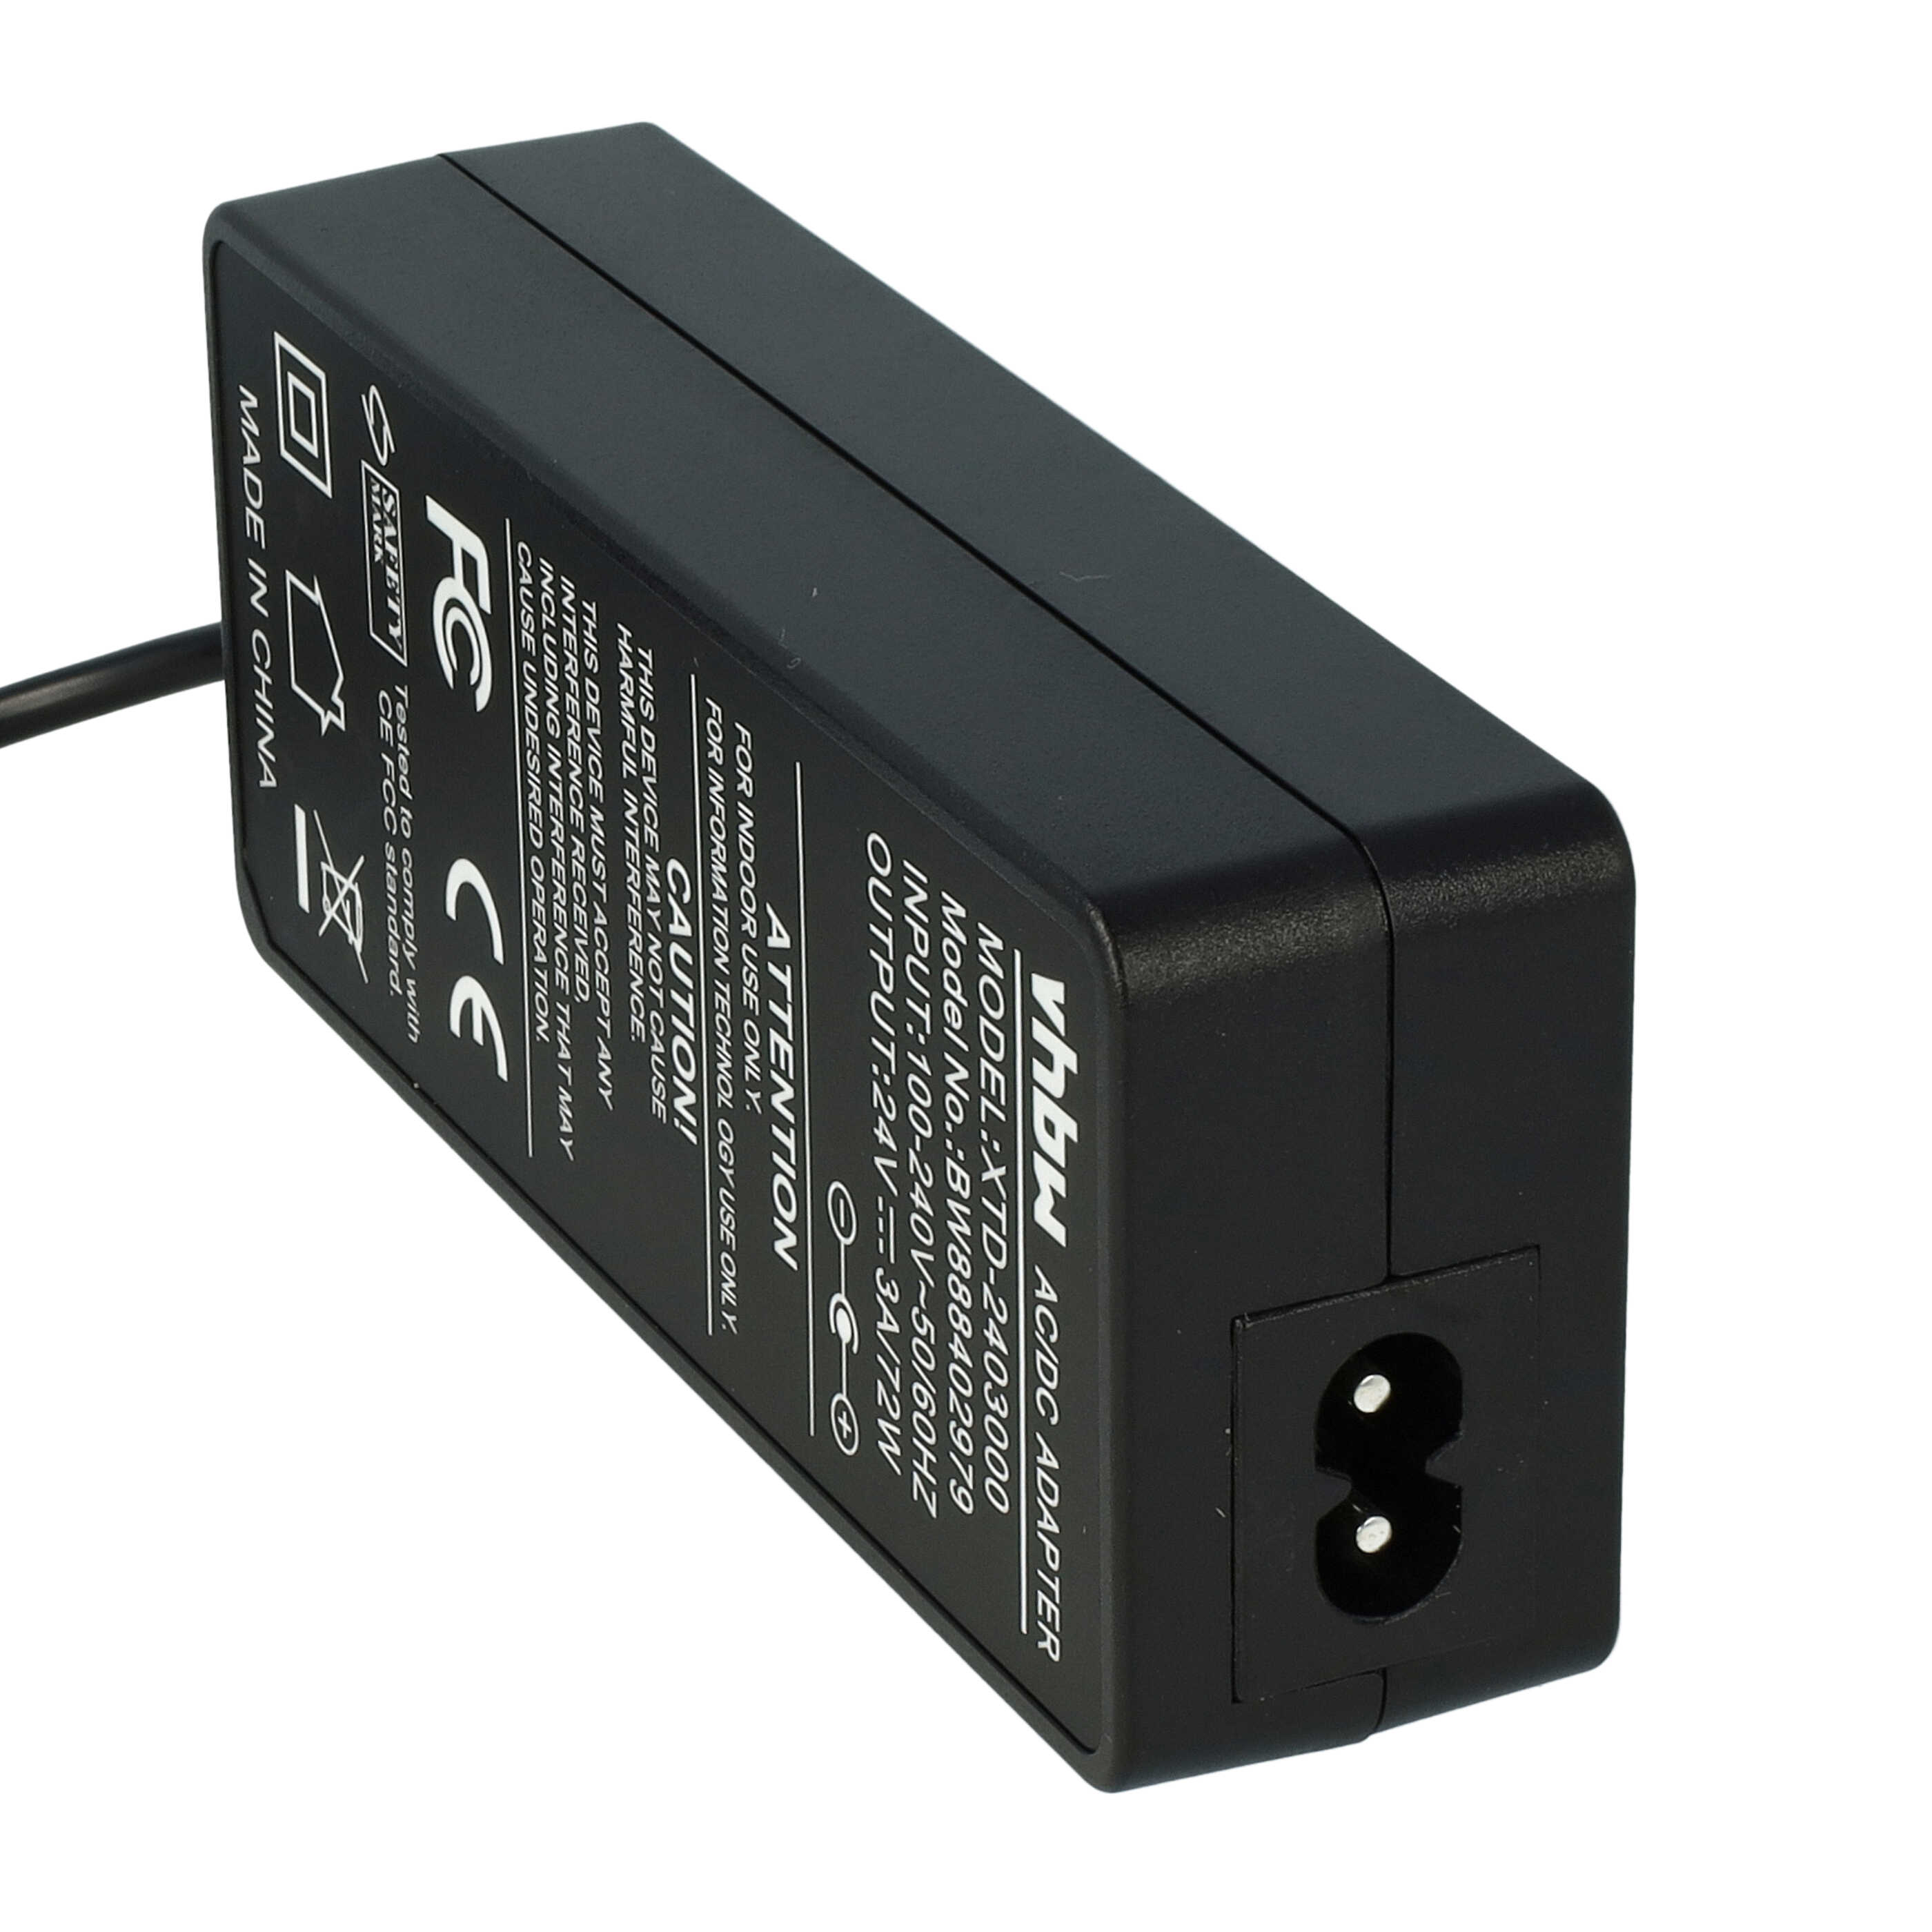 Mains Power Adapter replaces Epson DA-36E24, PS170, PS-170, DA36E24 for Printer, Receipt Printer etc. - 230 cm